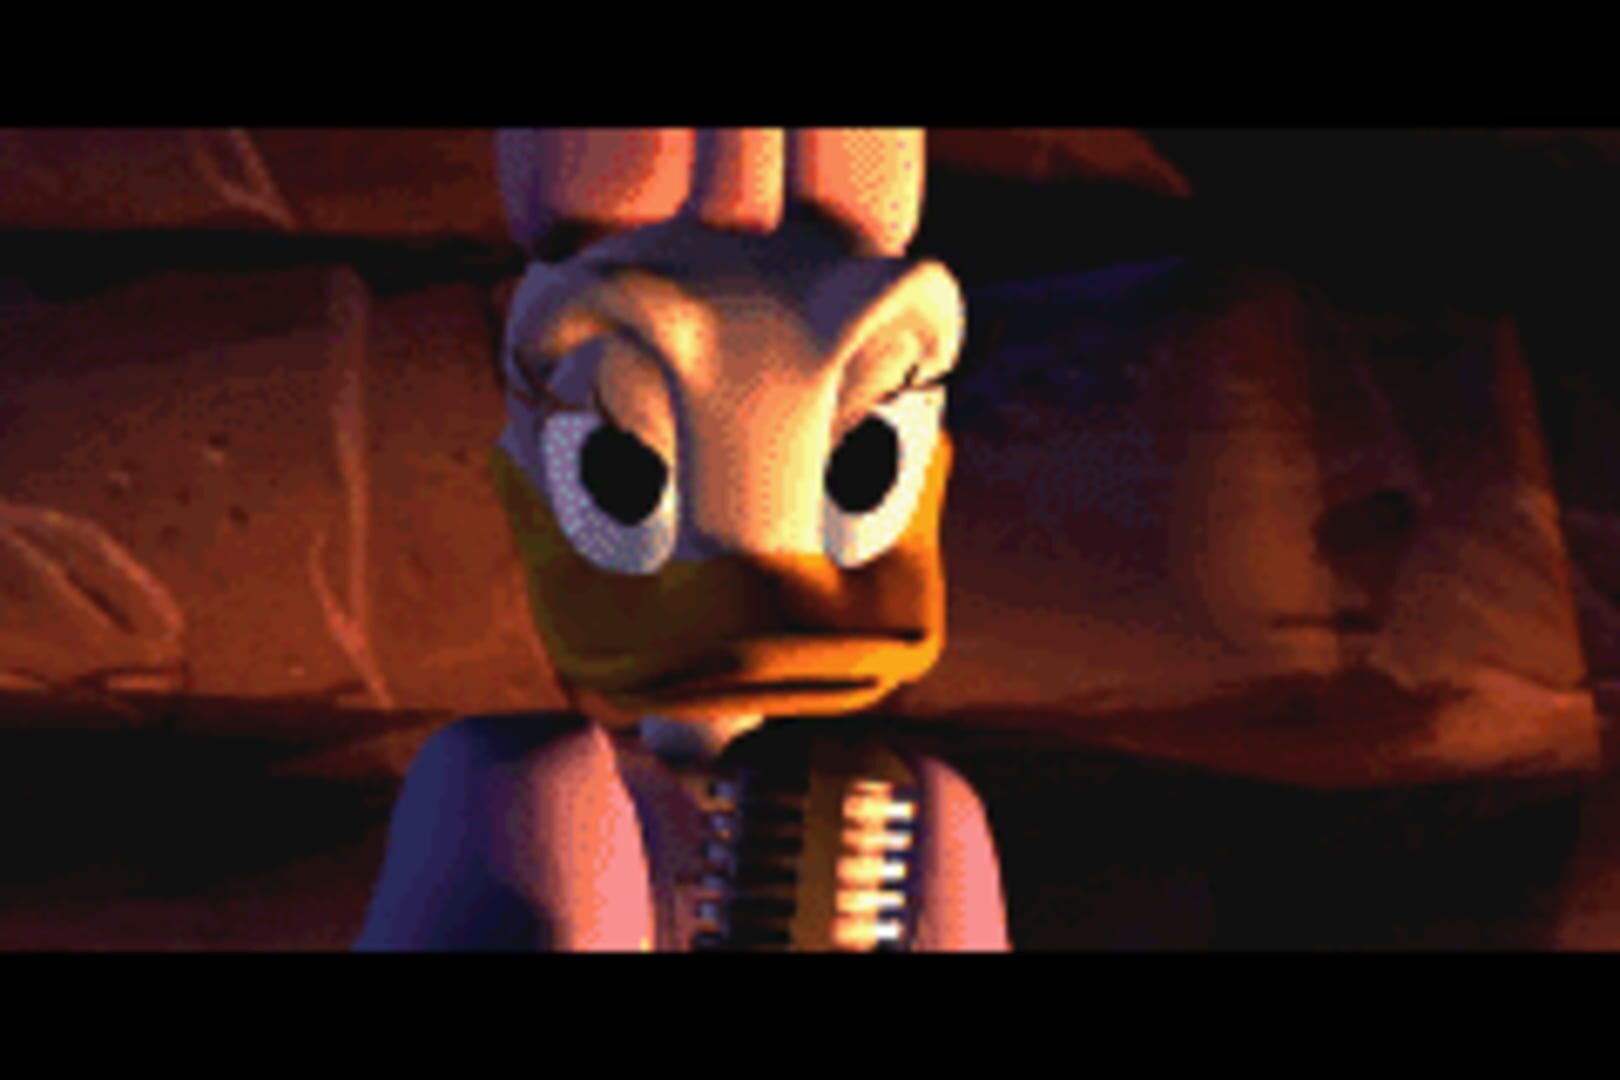 Captura de pantalla - Disney's Donald Duck Advance